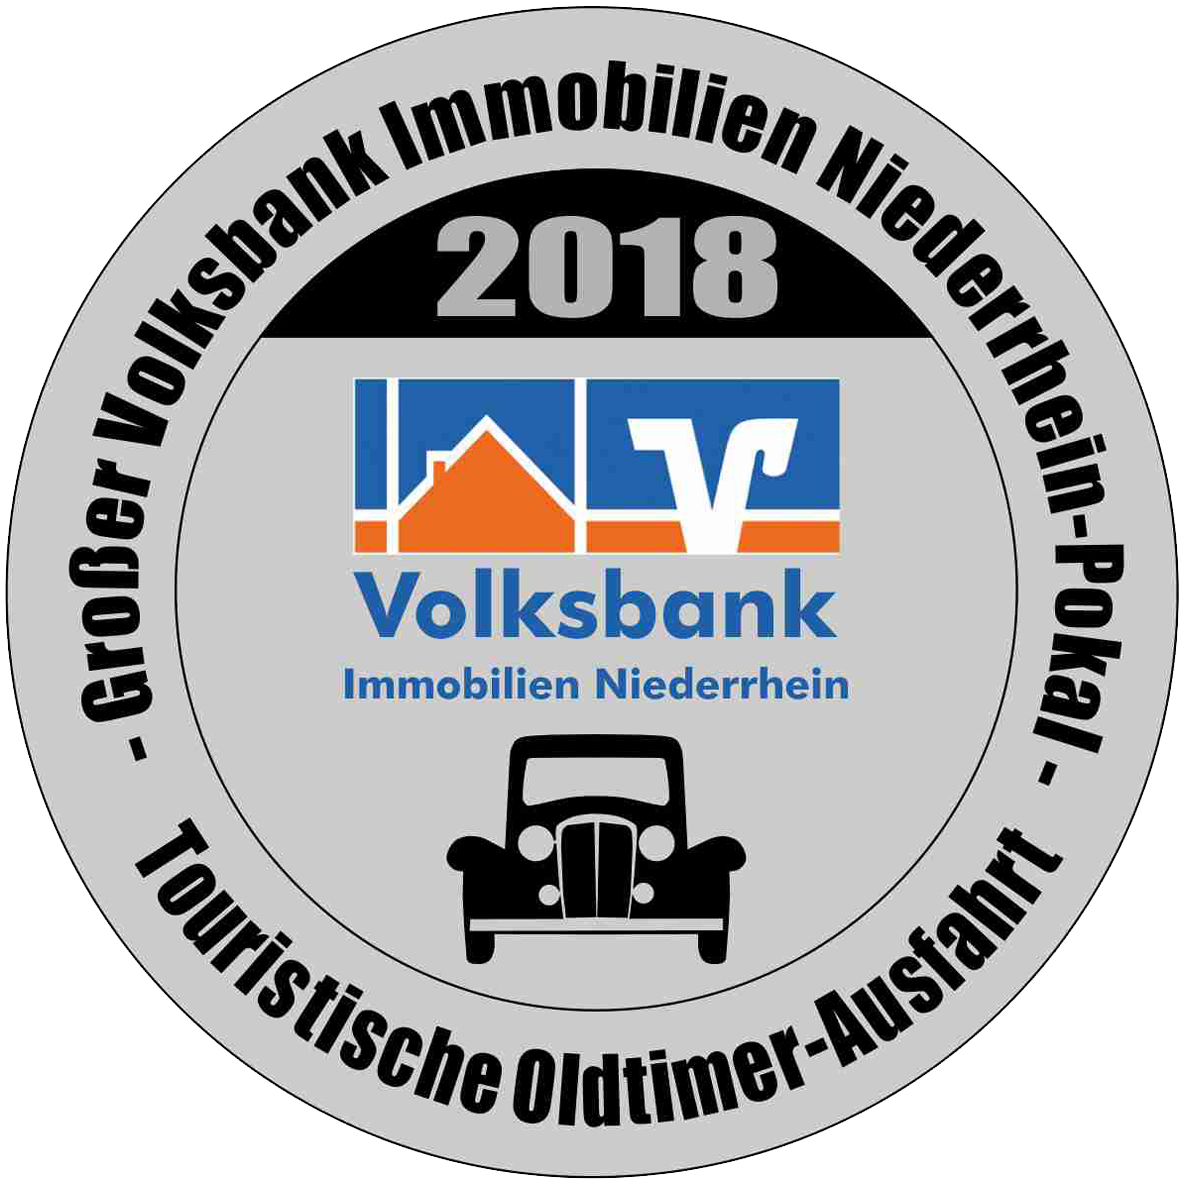 Großer Volksbank Immobilien-Niederrhein-Pokal 2018